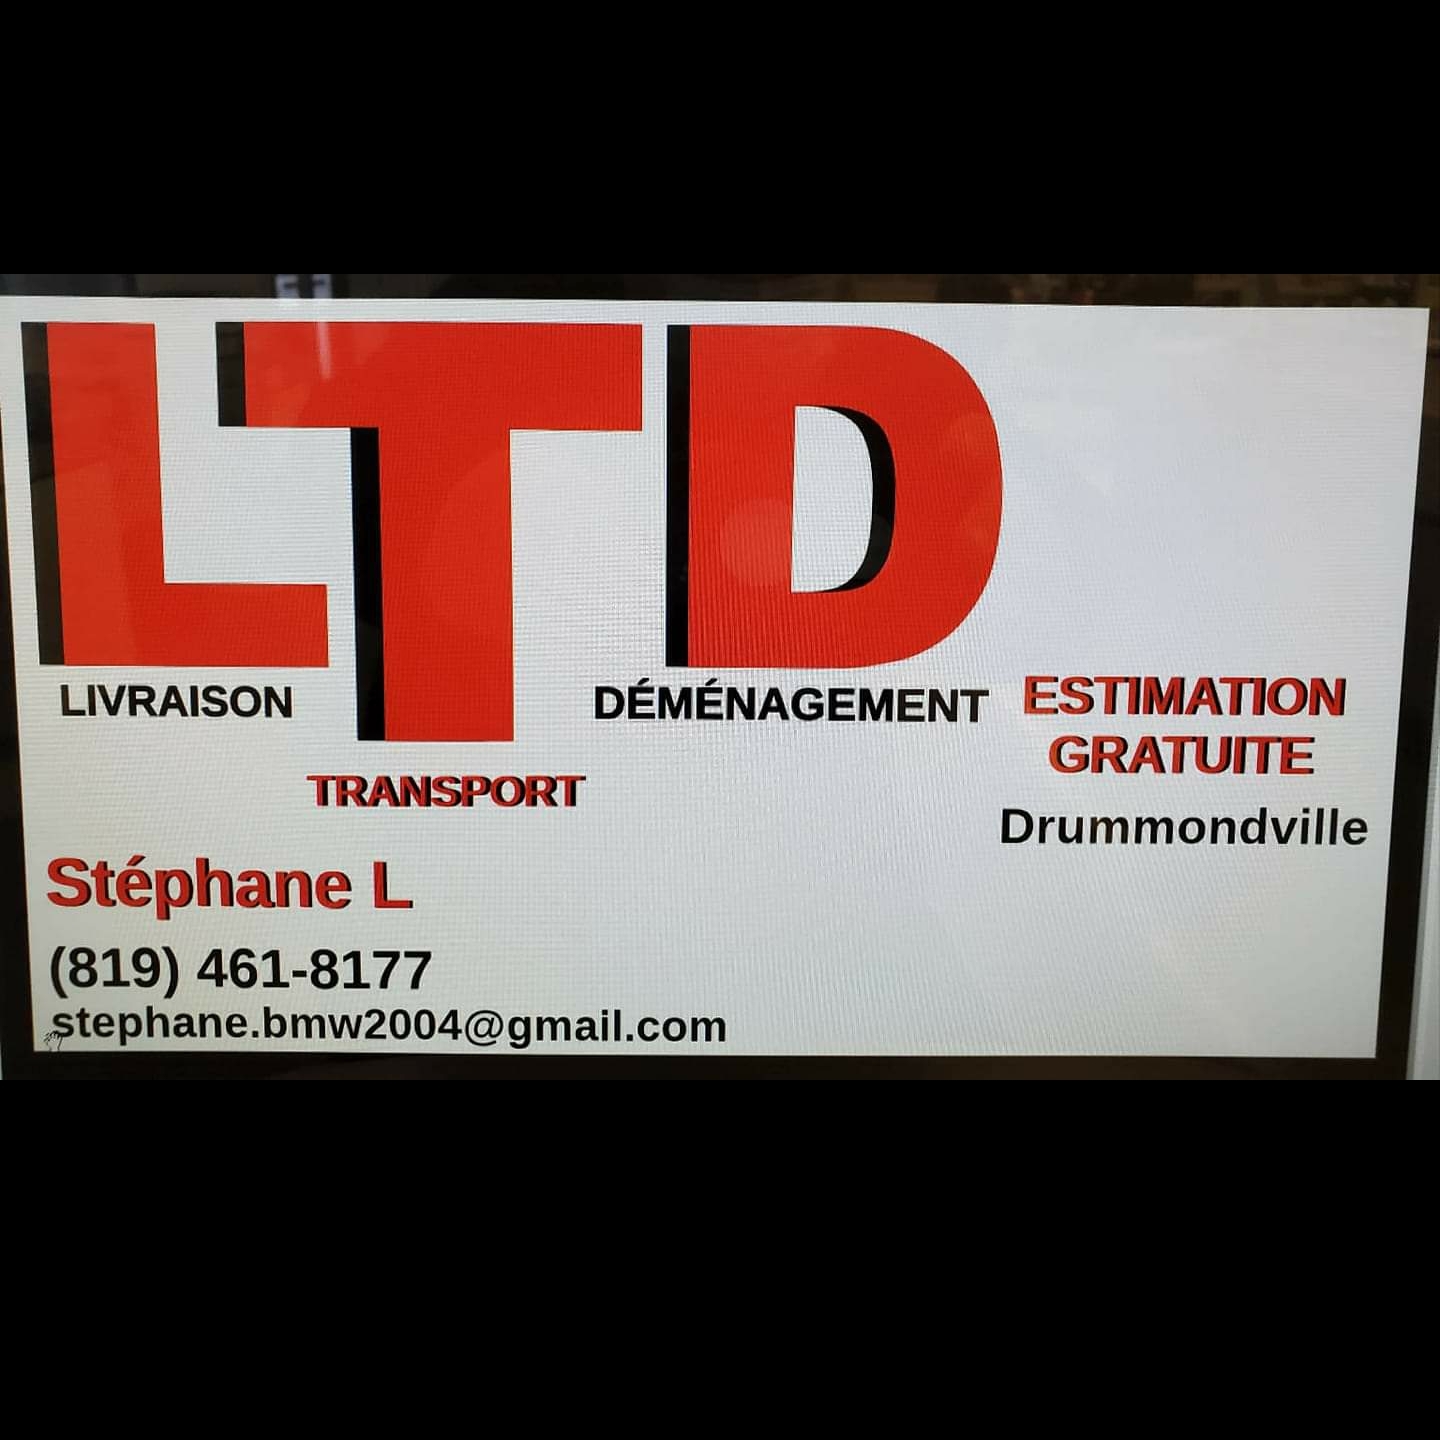 Stephane Lanteigne LTD Livraison Transport Demenagement